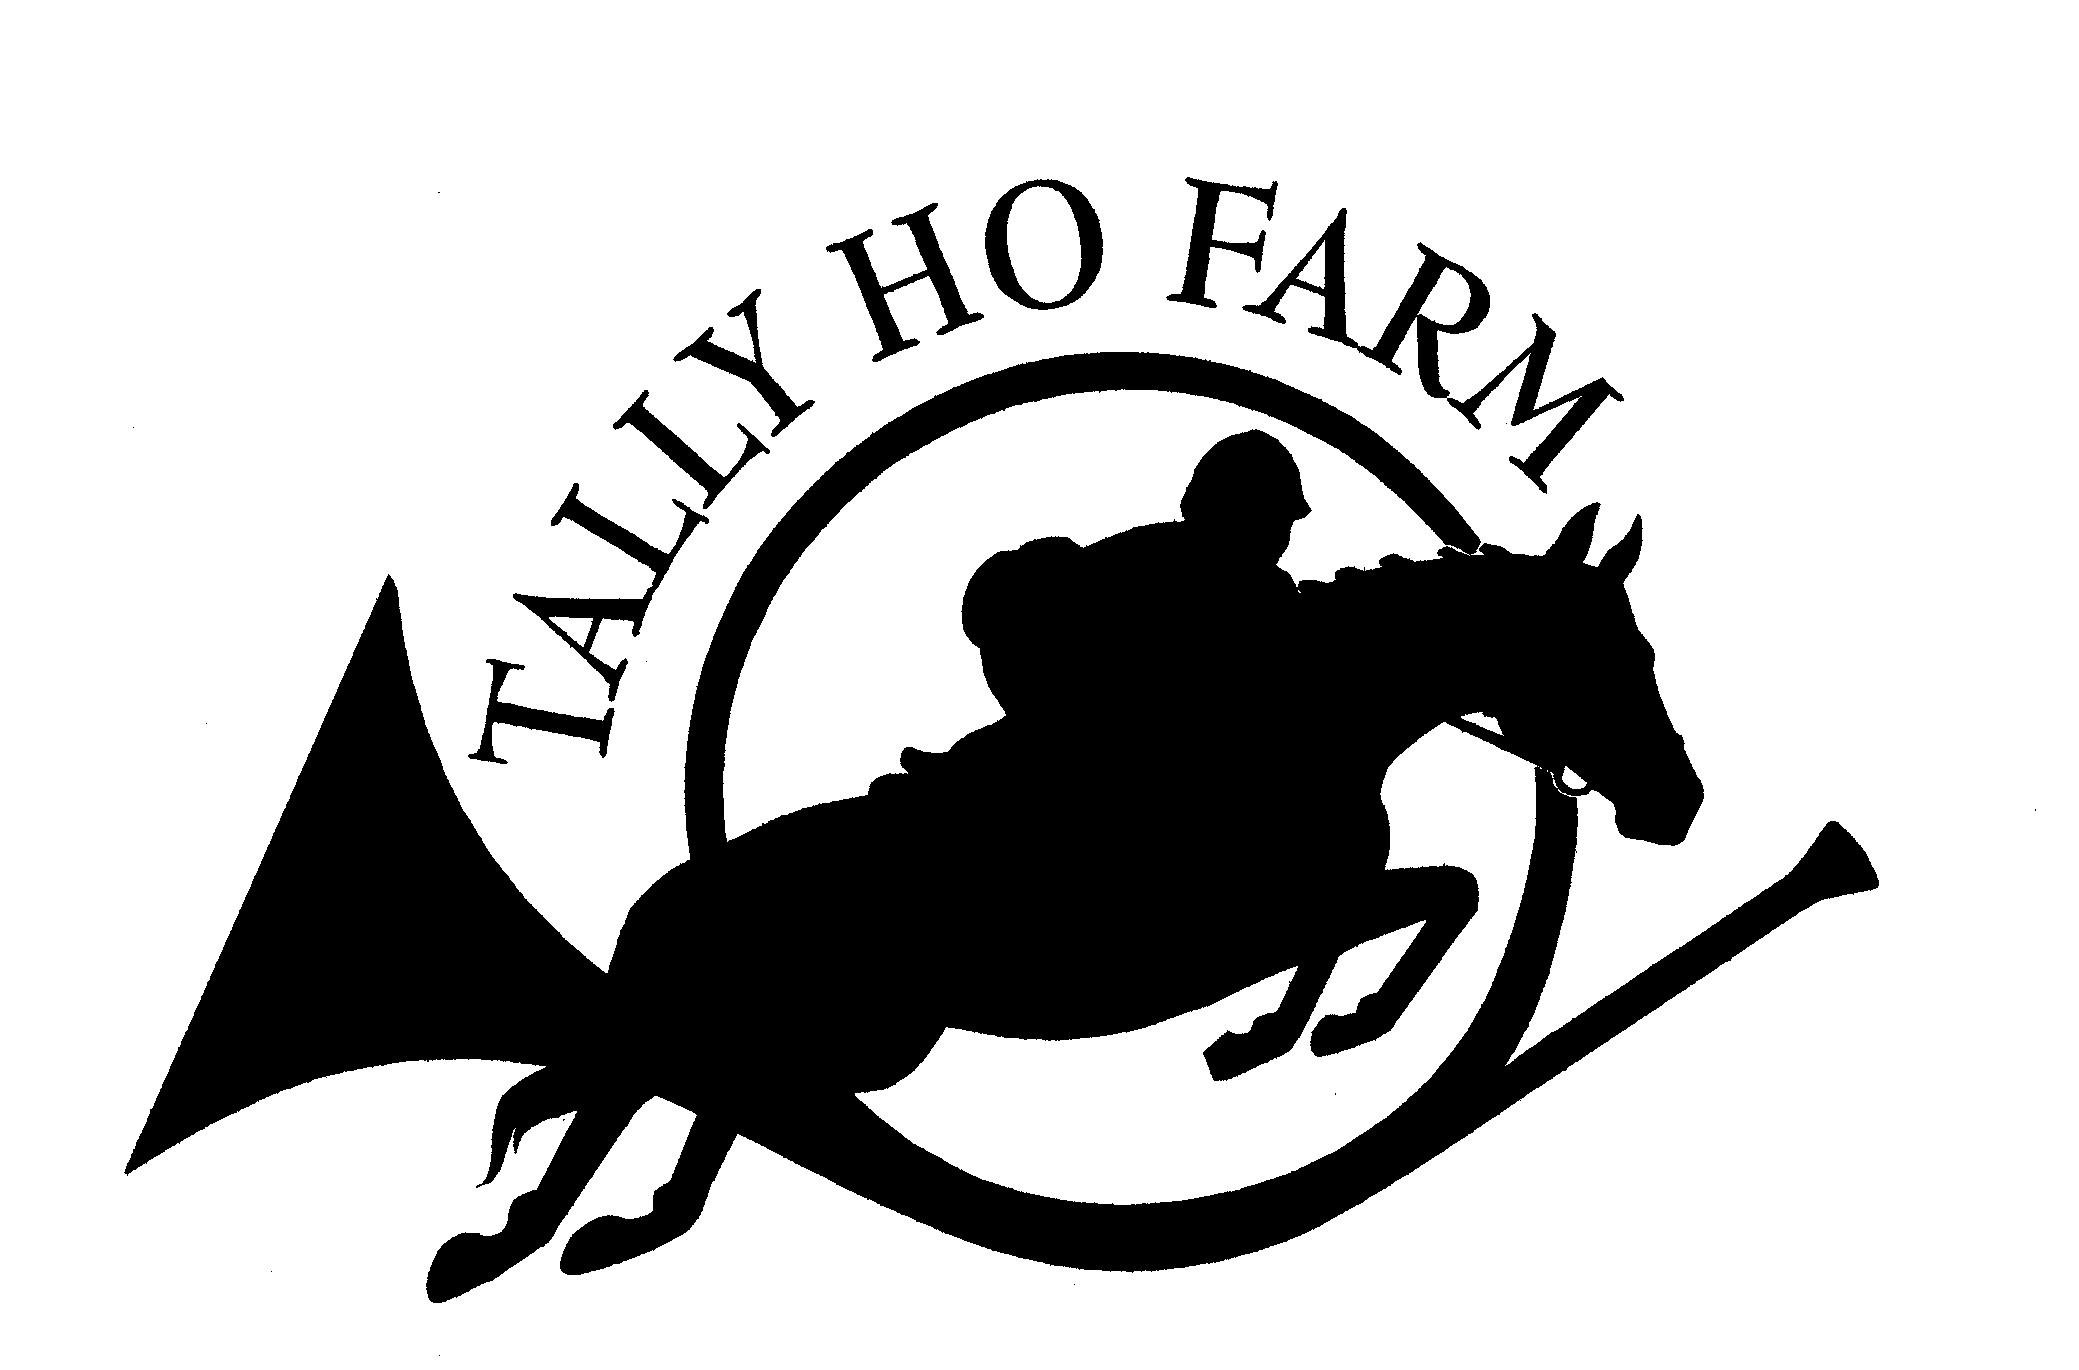 Tally Ho Farm